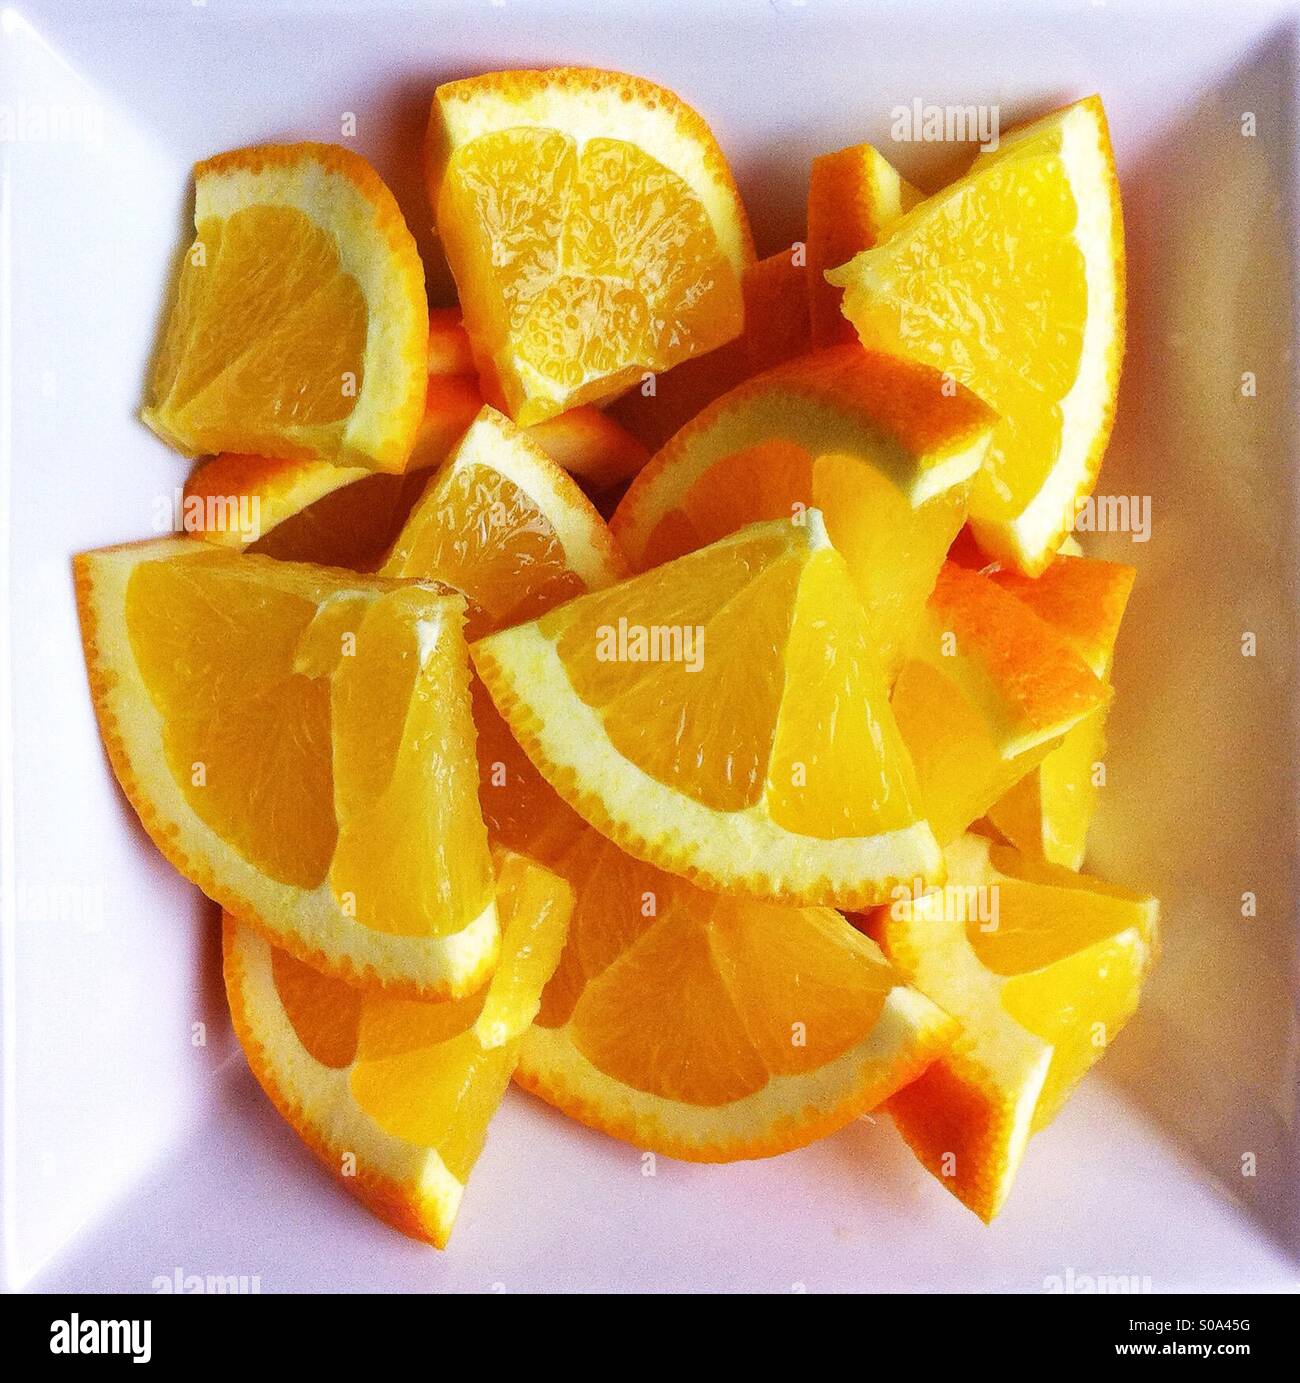 Acuartelados en las rodajas de naranja en el cuadrado blanco bowl Foto de stock